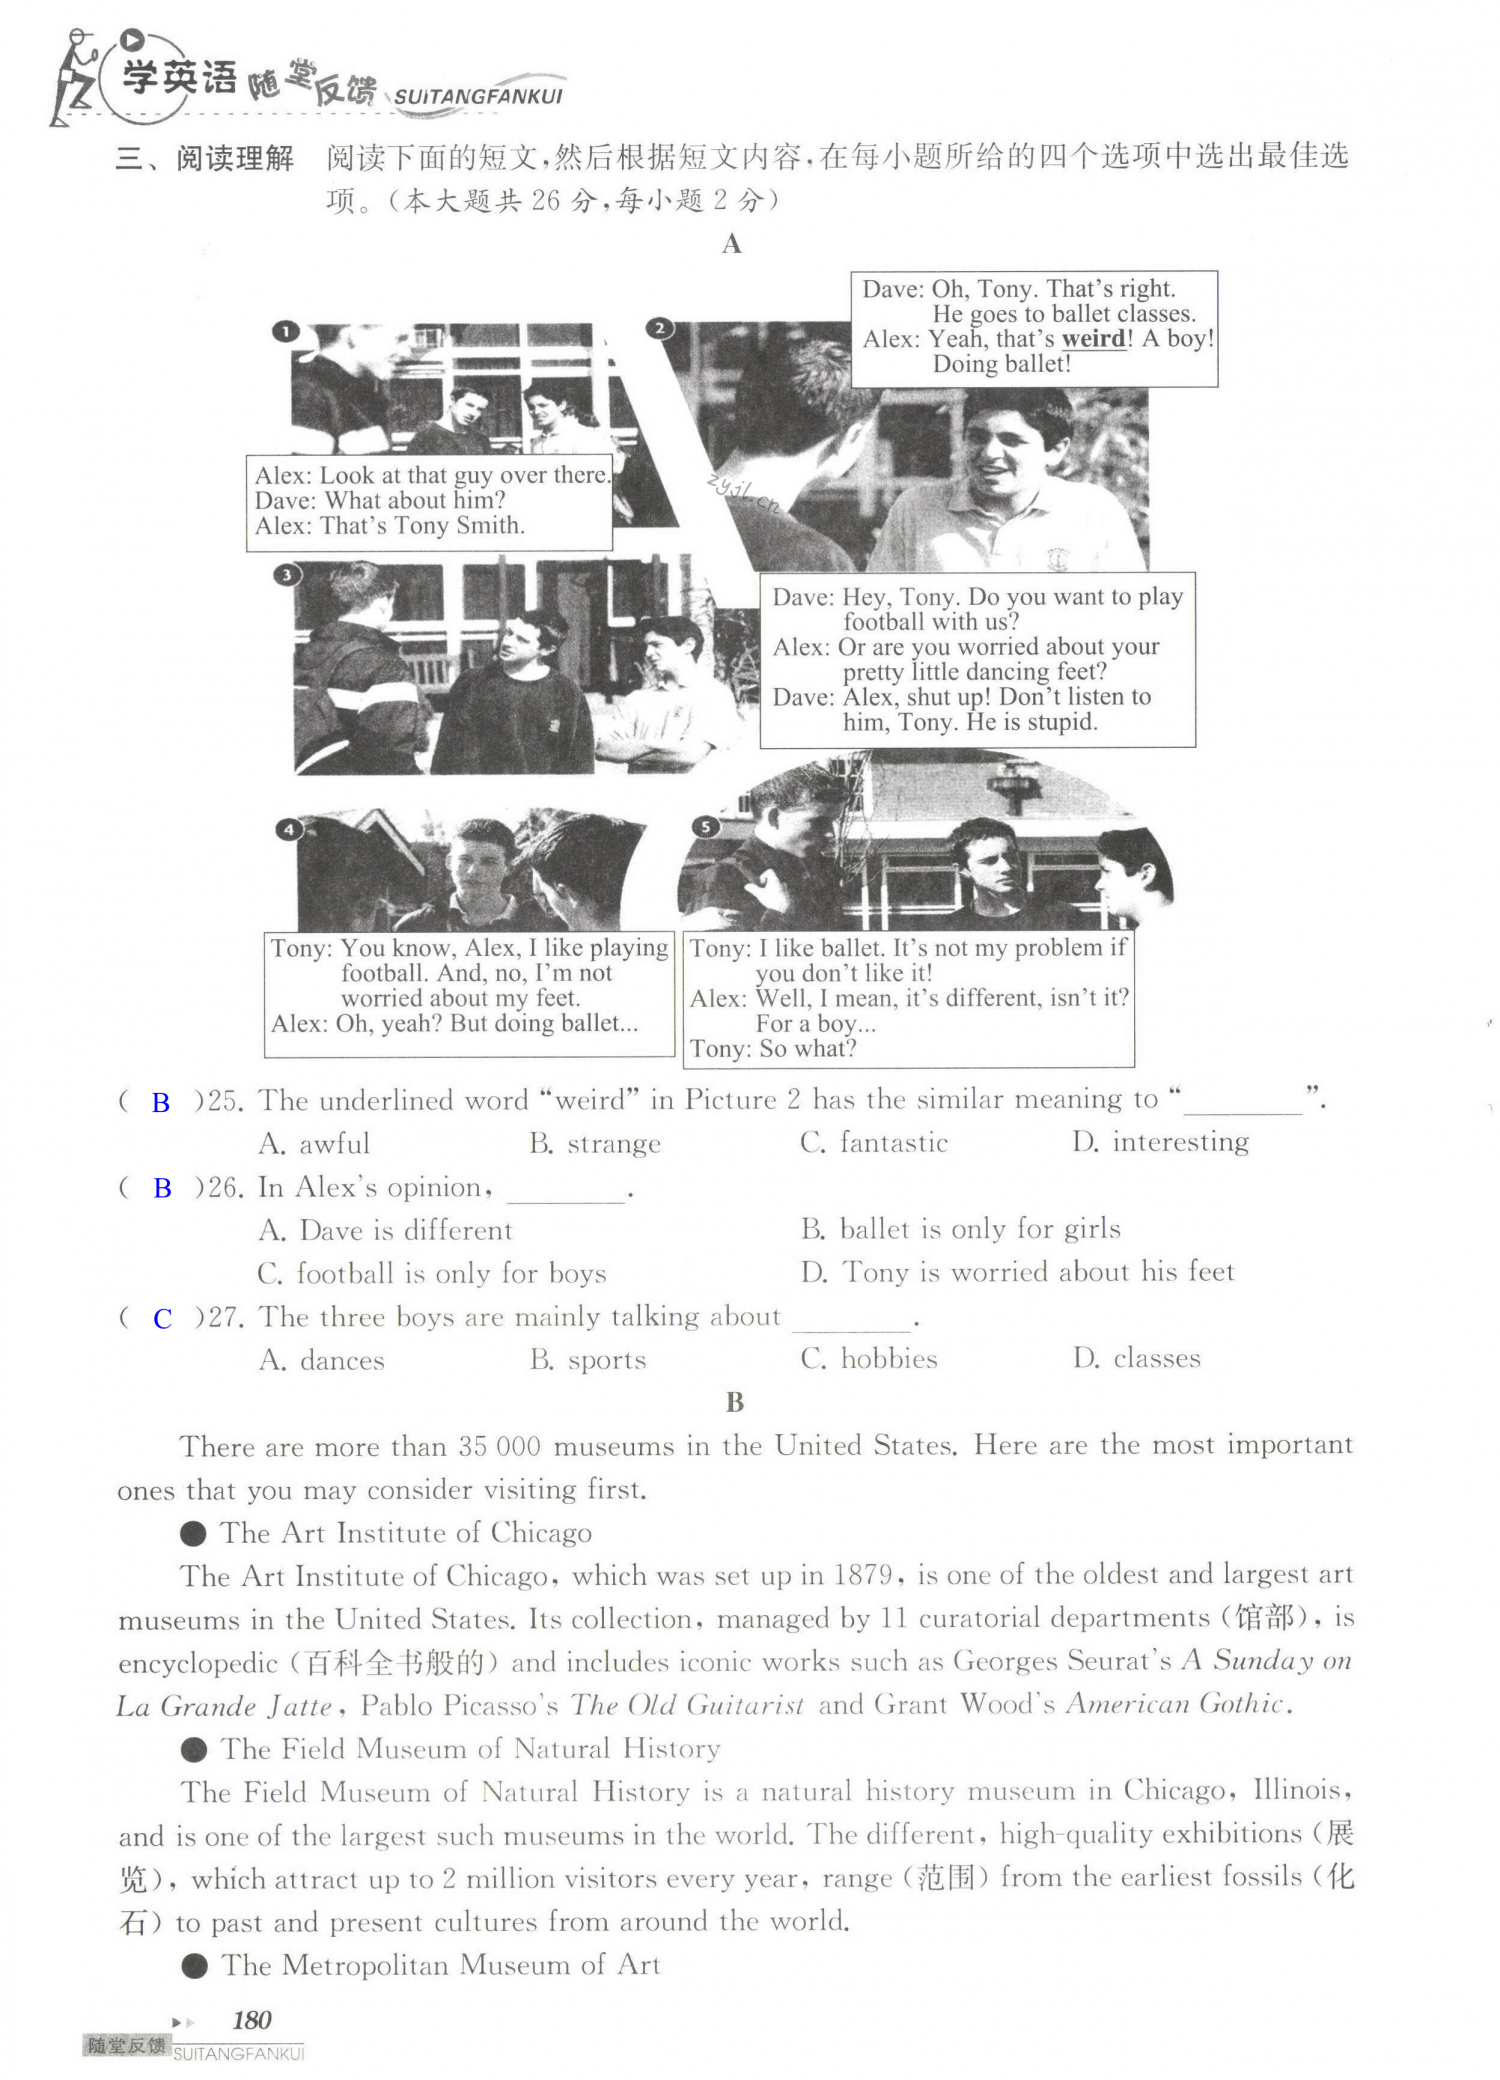 单元综合测试卷 Test for Units 3-4 of 9B - 第180页